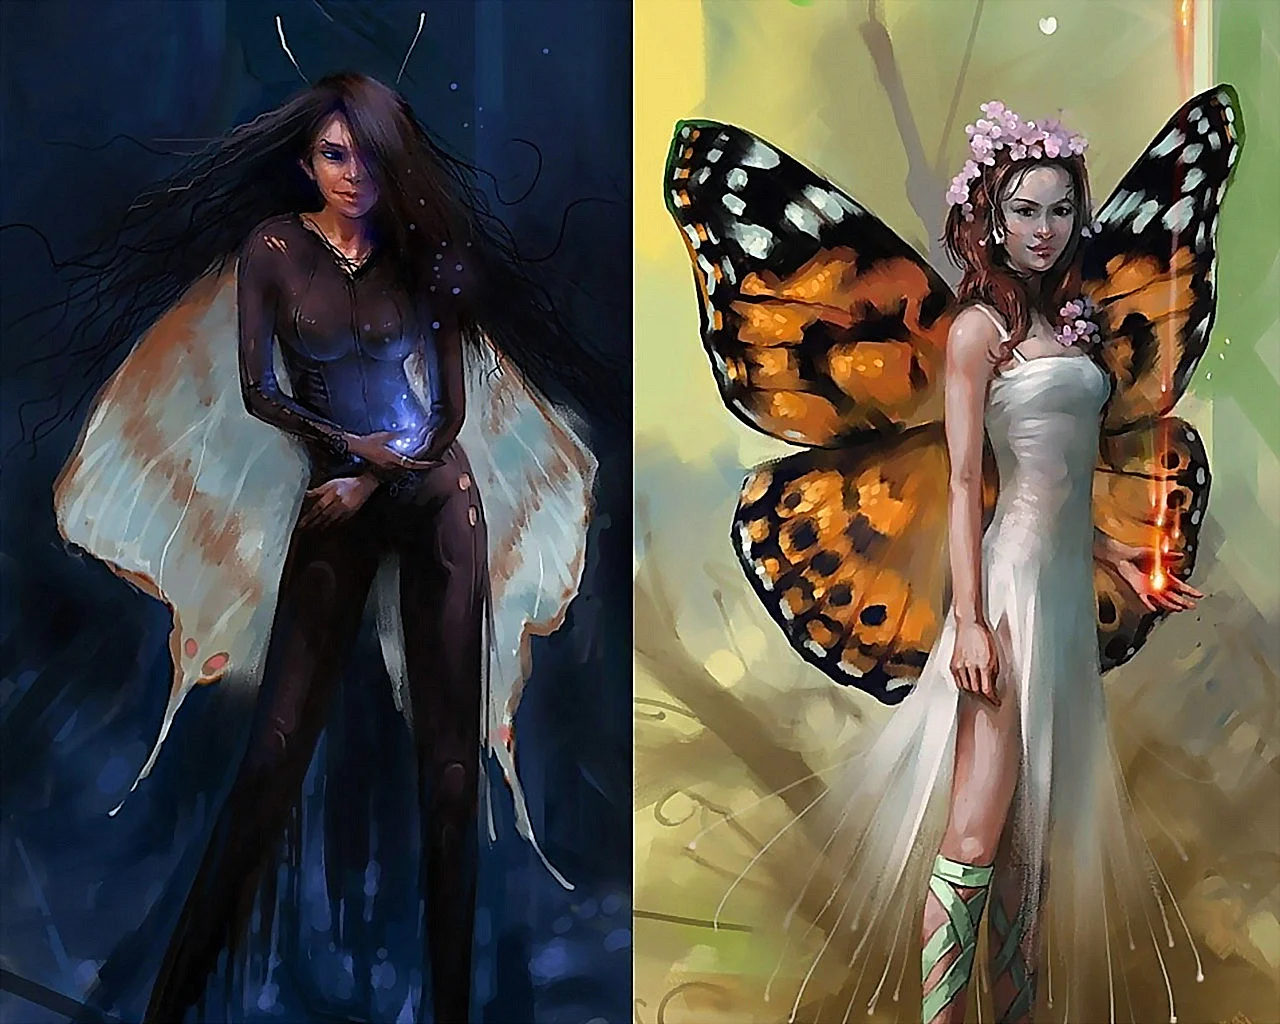 Женщина с крыльями бабочки